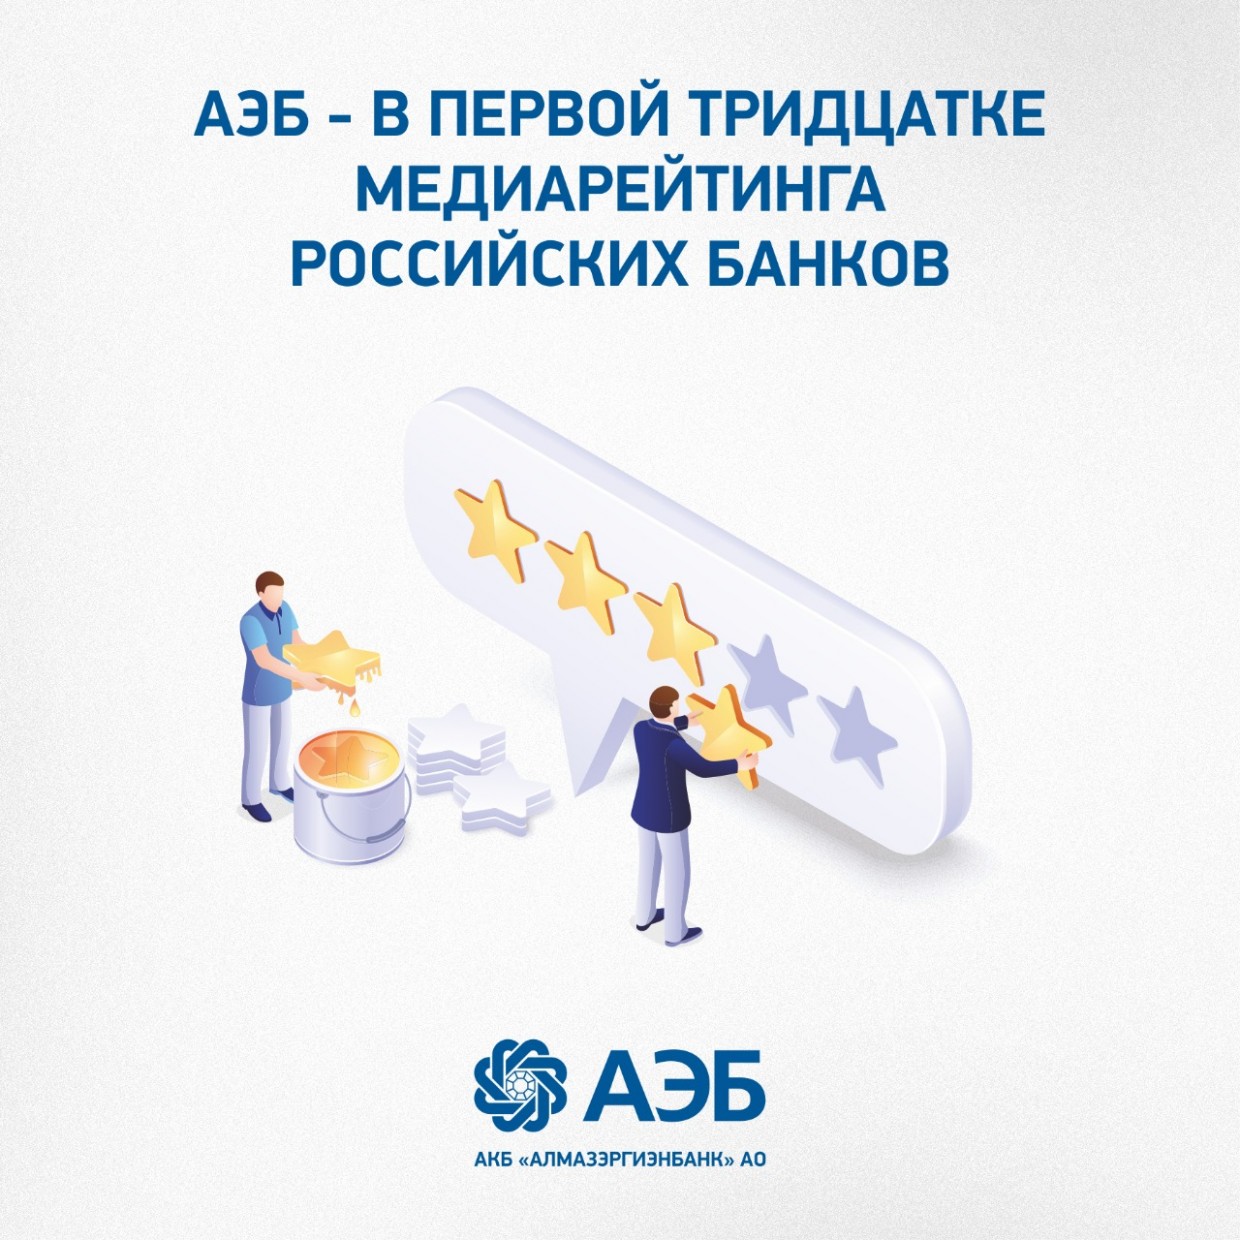 АЭБ - в первой тридцатке медиарейтинга российских банков